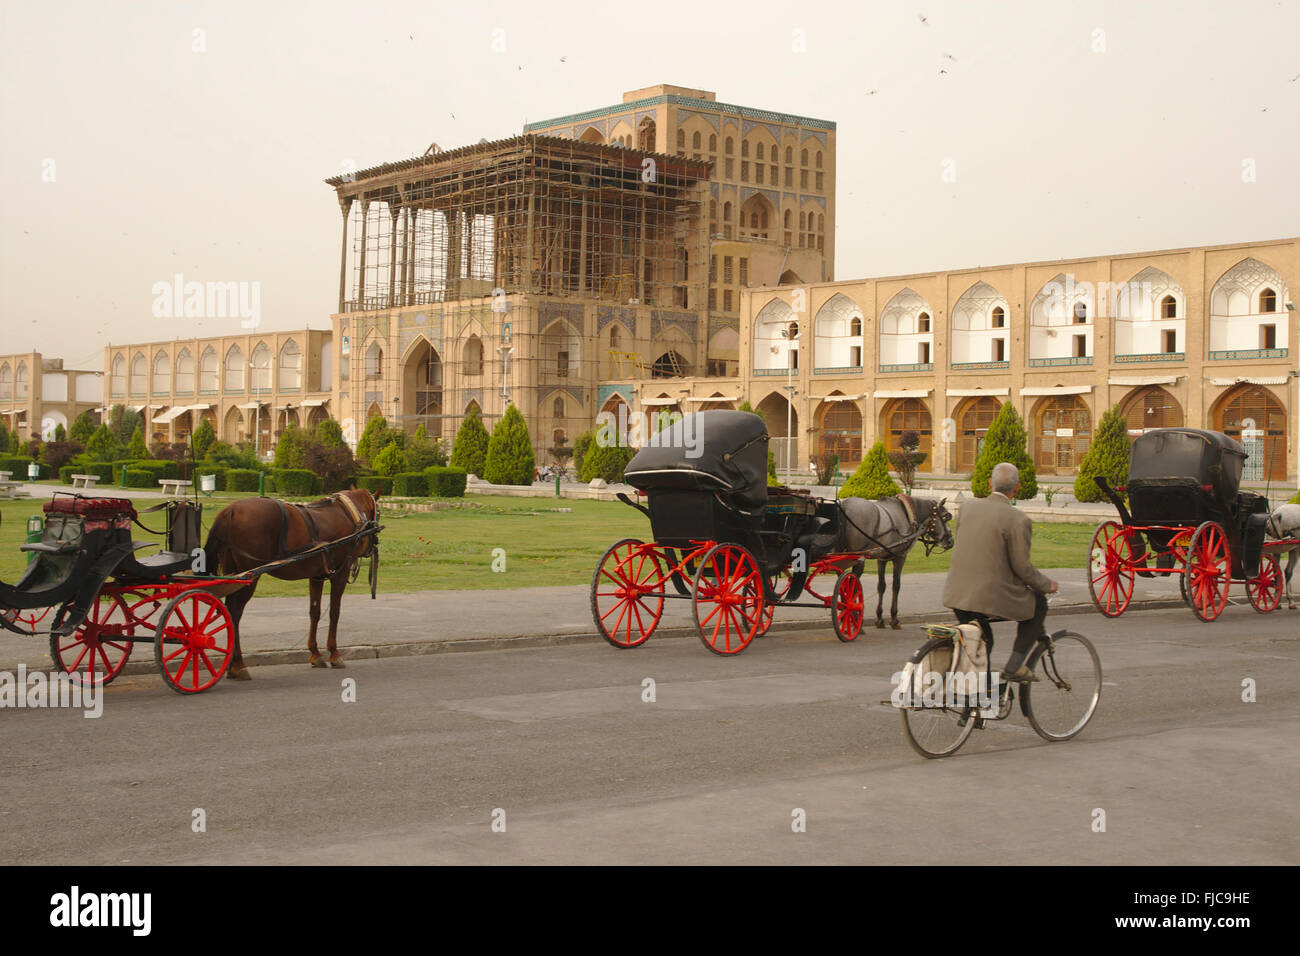 Chars en face du Palais Ali Qapu sur place Imam Shah (Square), Isfahan, Iran Banque D'Images